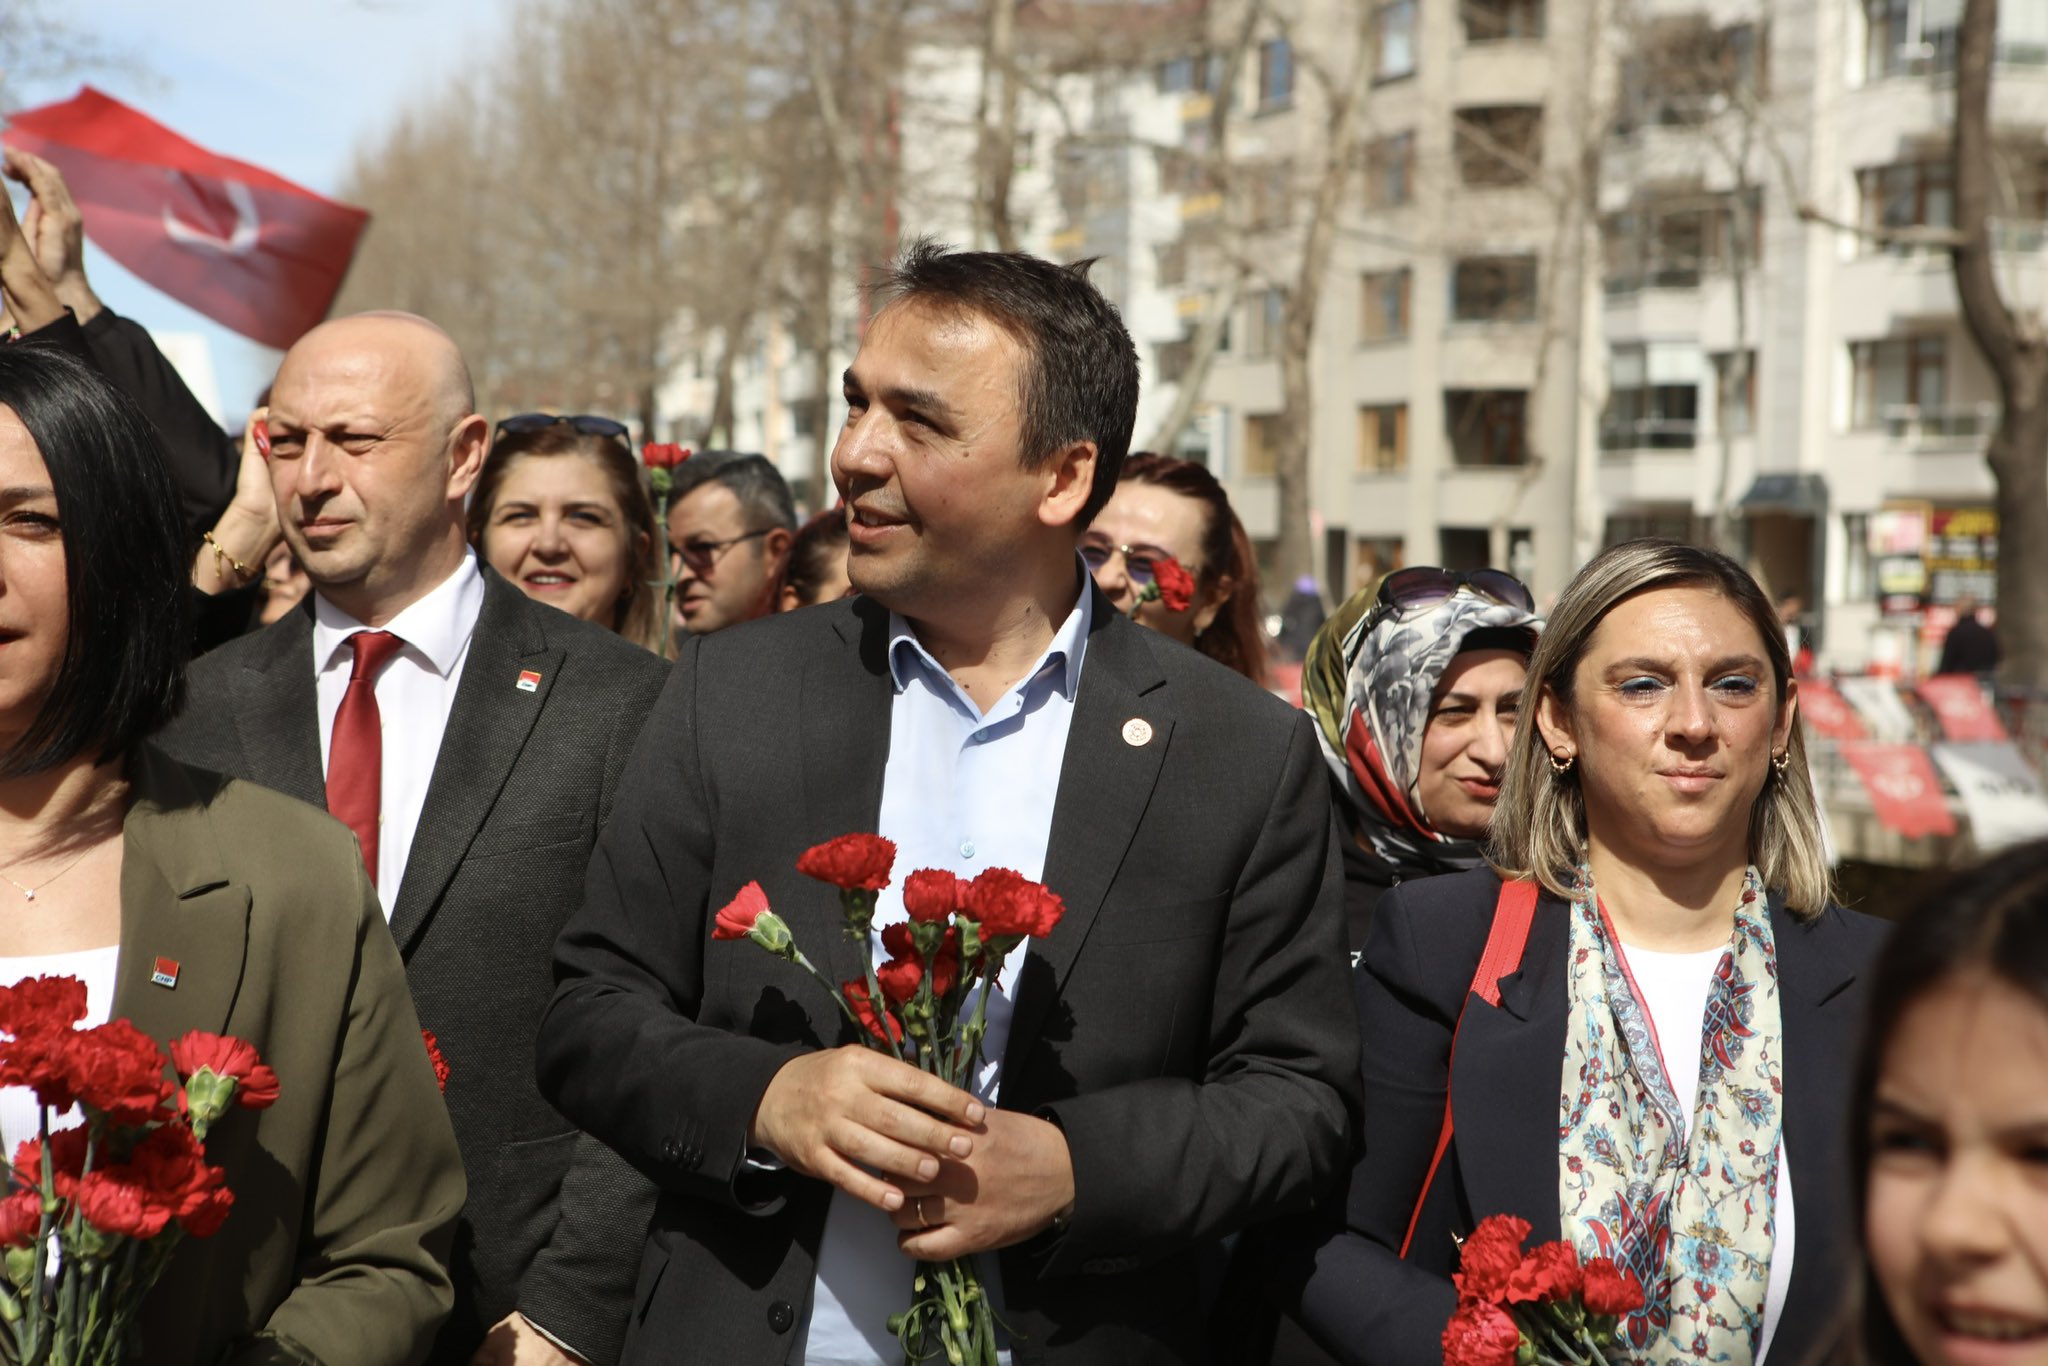 Amedspor Kastamonu'da: Belediye Başkanı’ndan dostluk mesajı